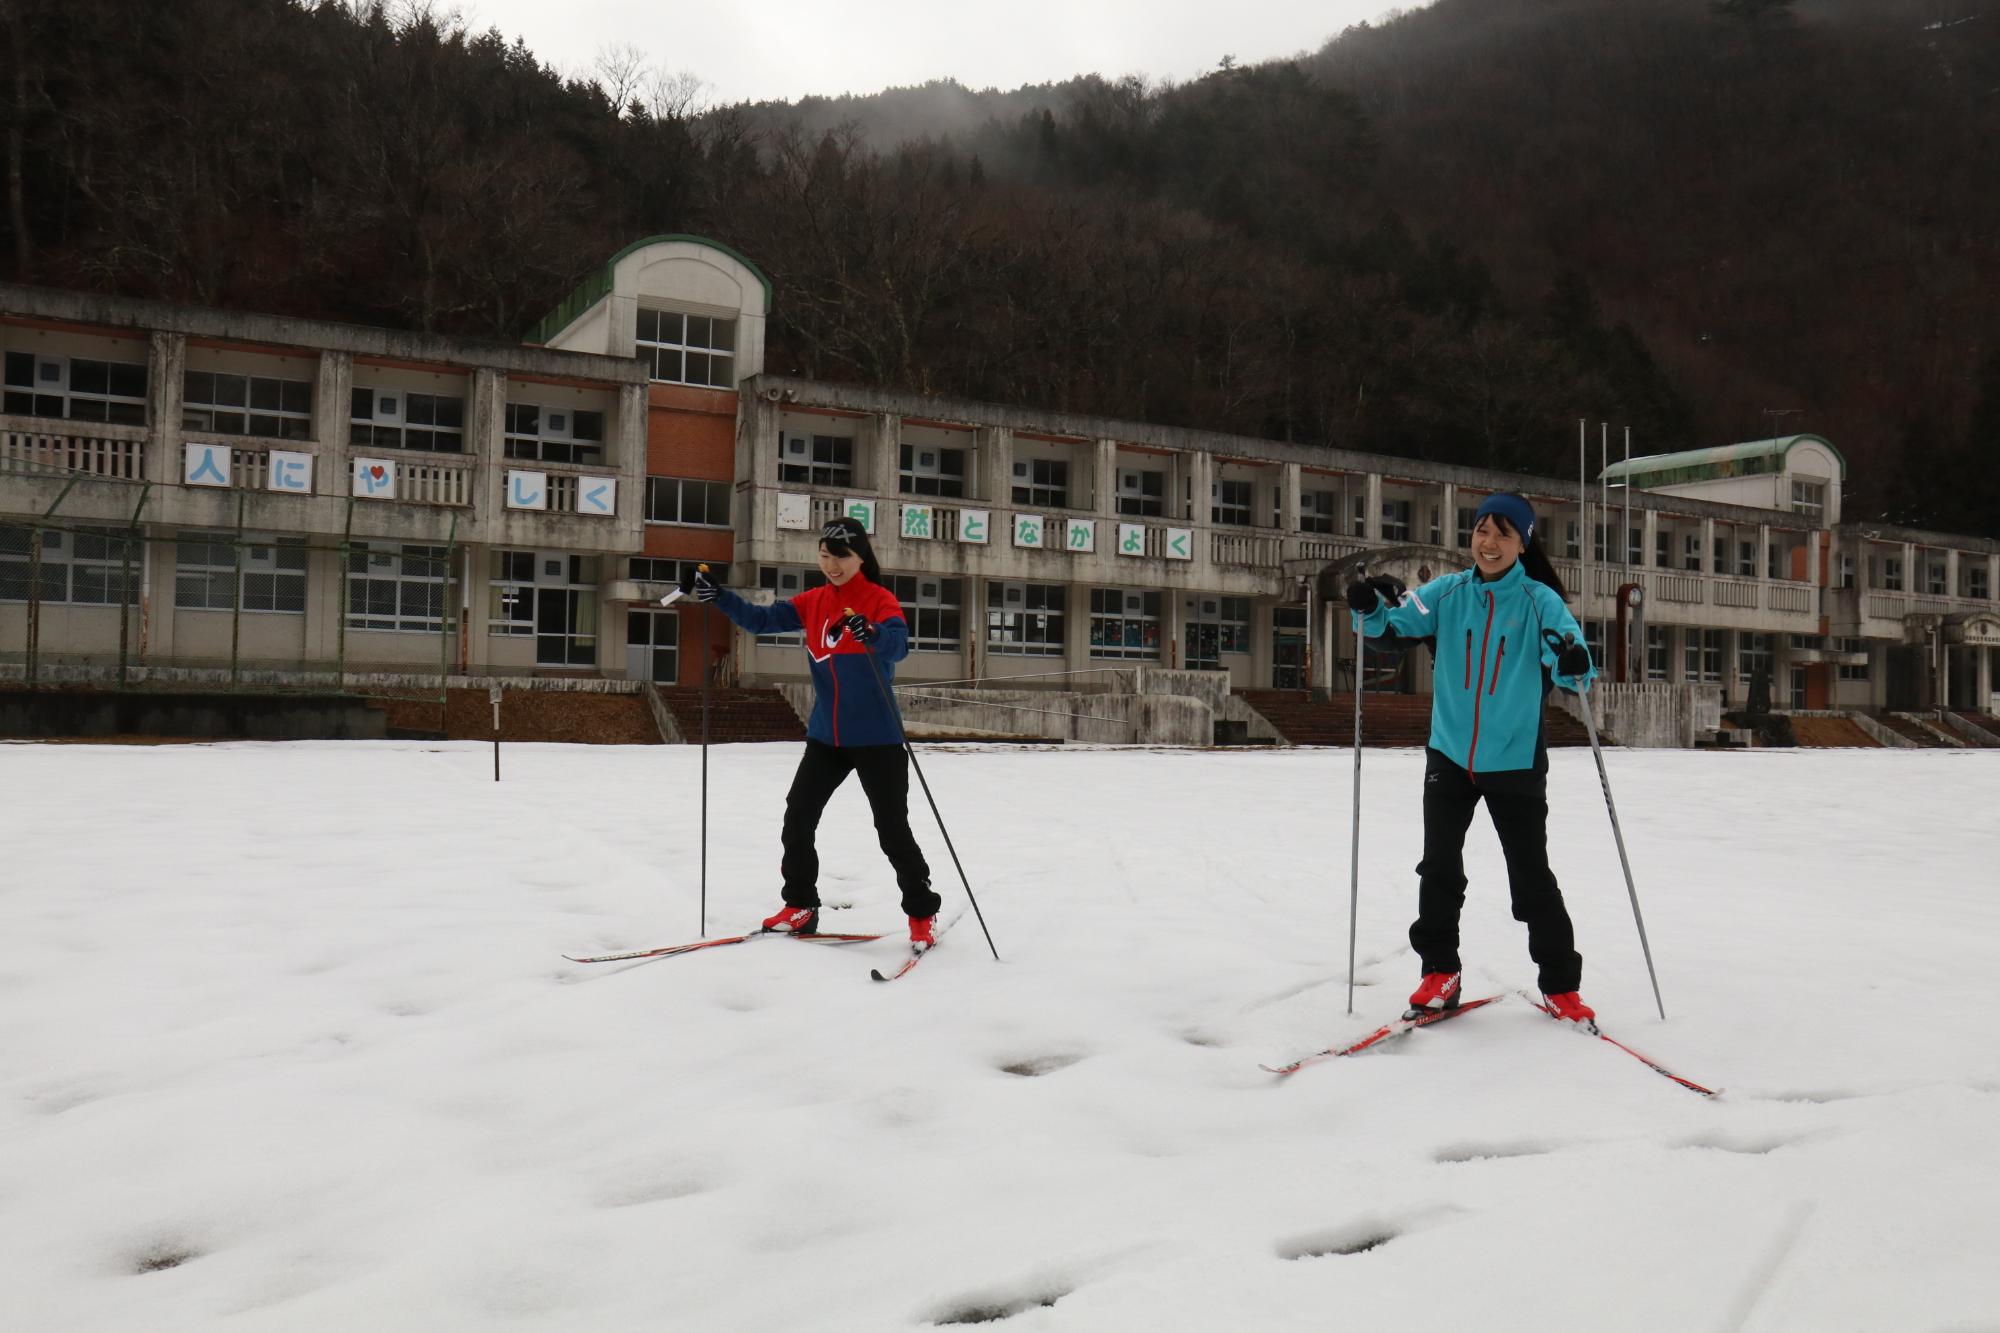 クロスカントリーを練習中の千種高校スキー部員らの写真